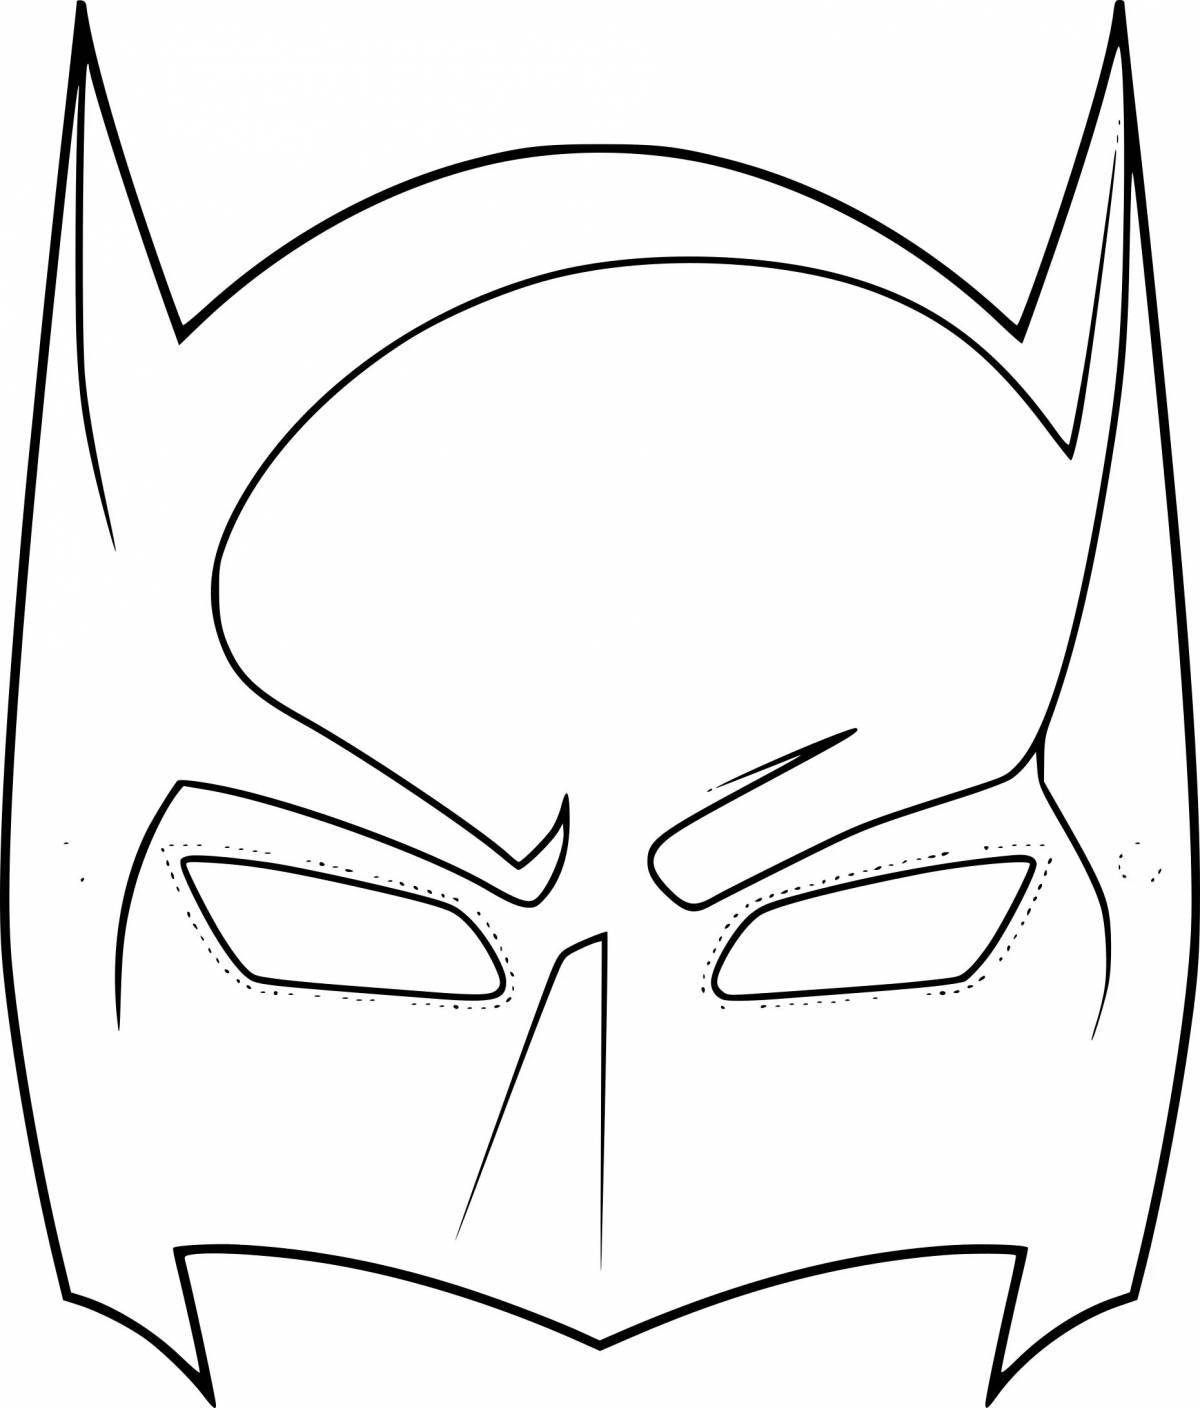 Fun coloring superhero mask